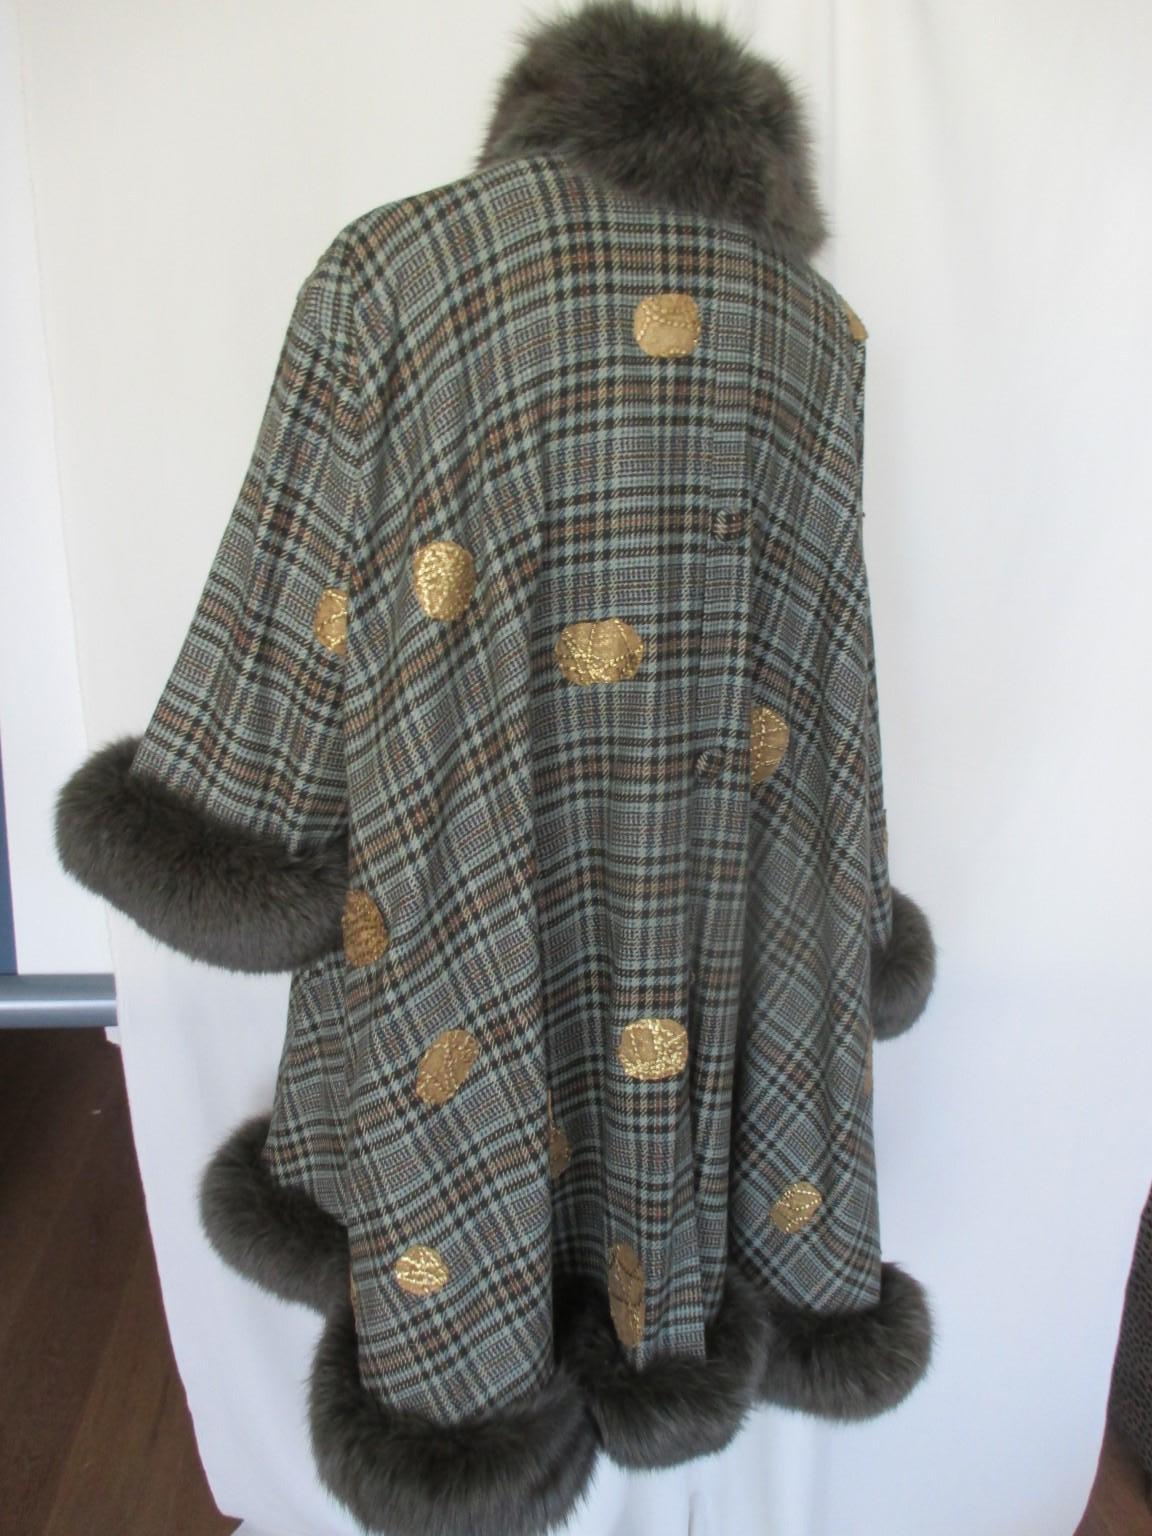 Ce manteau de style cape est fabriqué en laine à carreaux verts et conçu par un artiste à la main avec des tissus dorés.

 Nous proposons d'autres articles de luxe en fourrure, consultez notre boutique en ligne.

Détails :
Couleur : Vert
Garni de